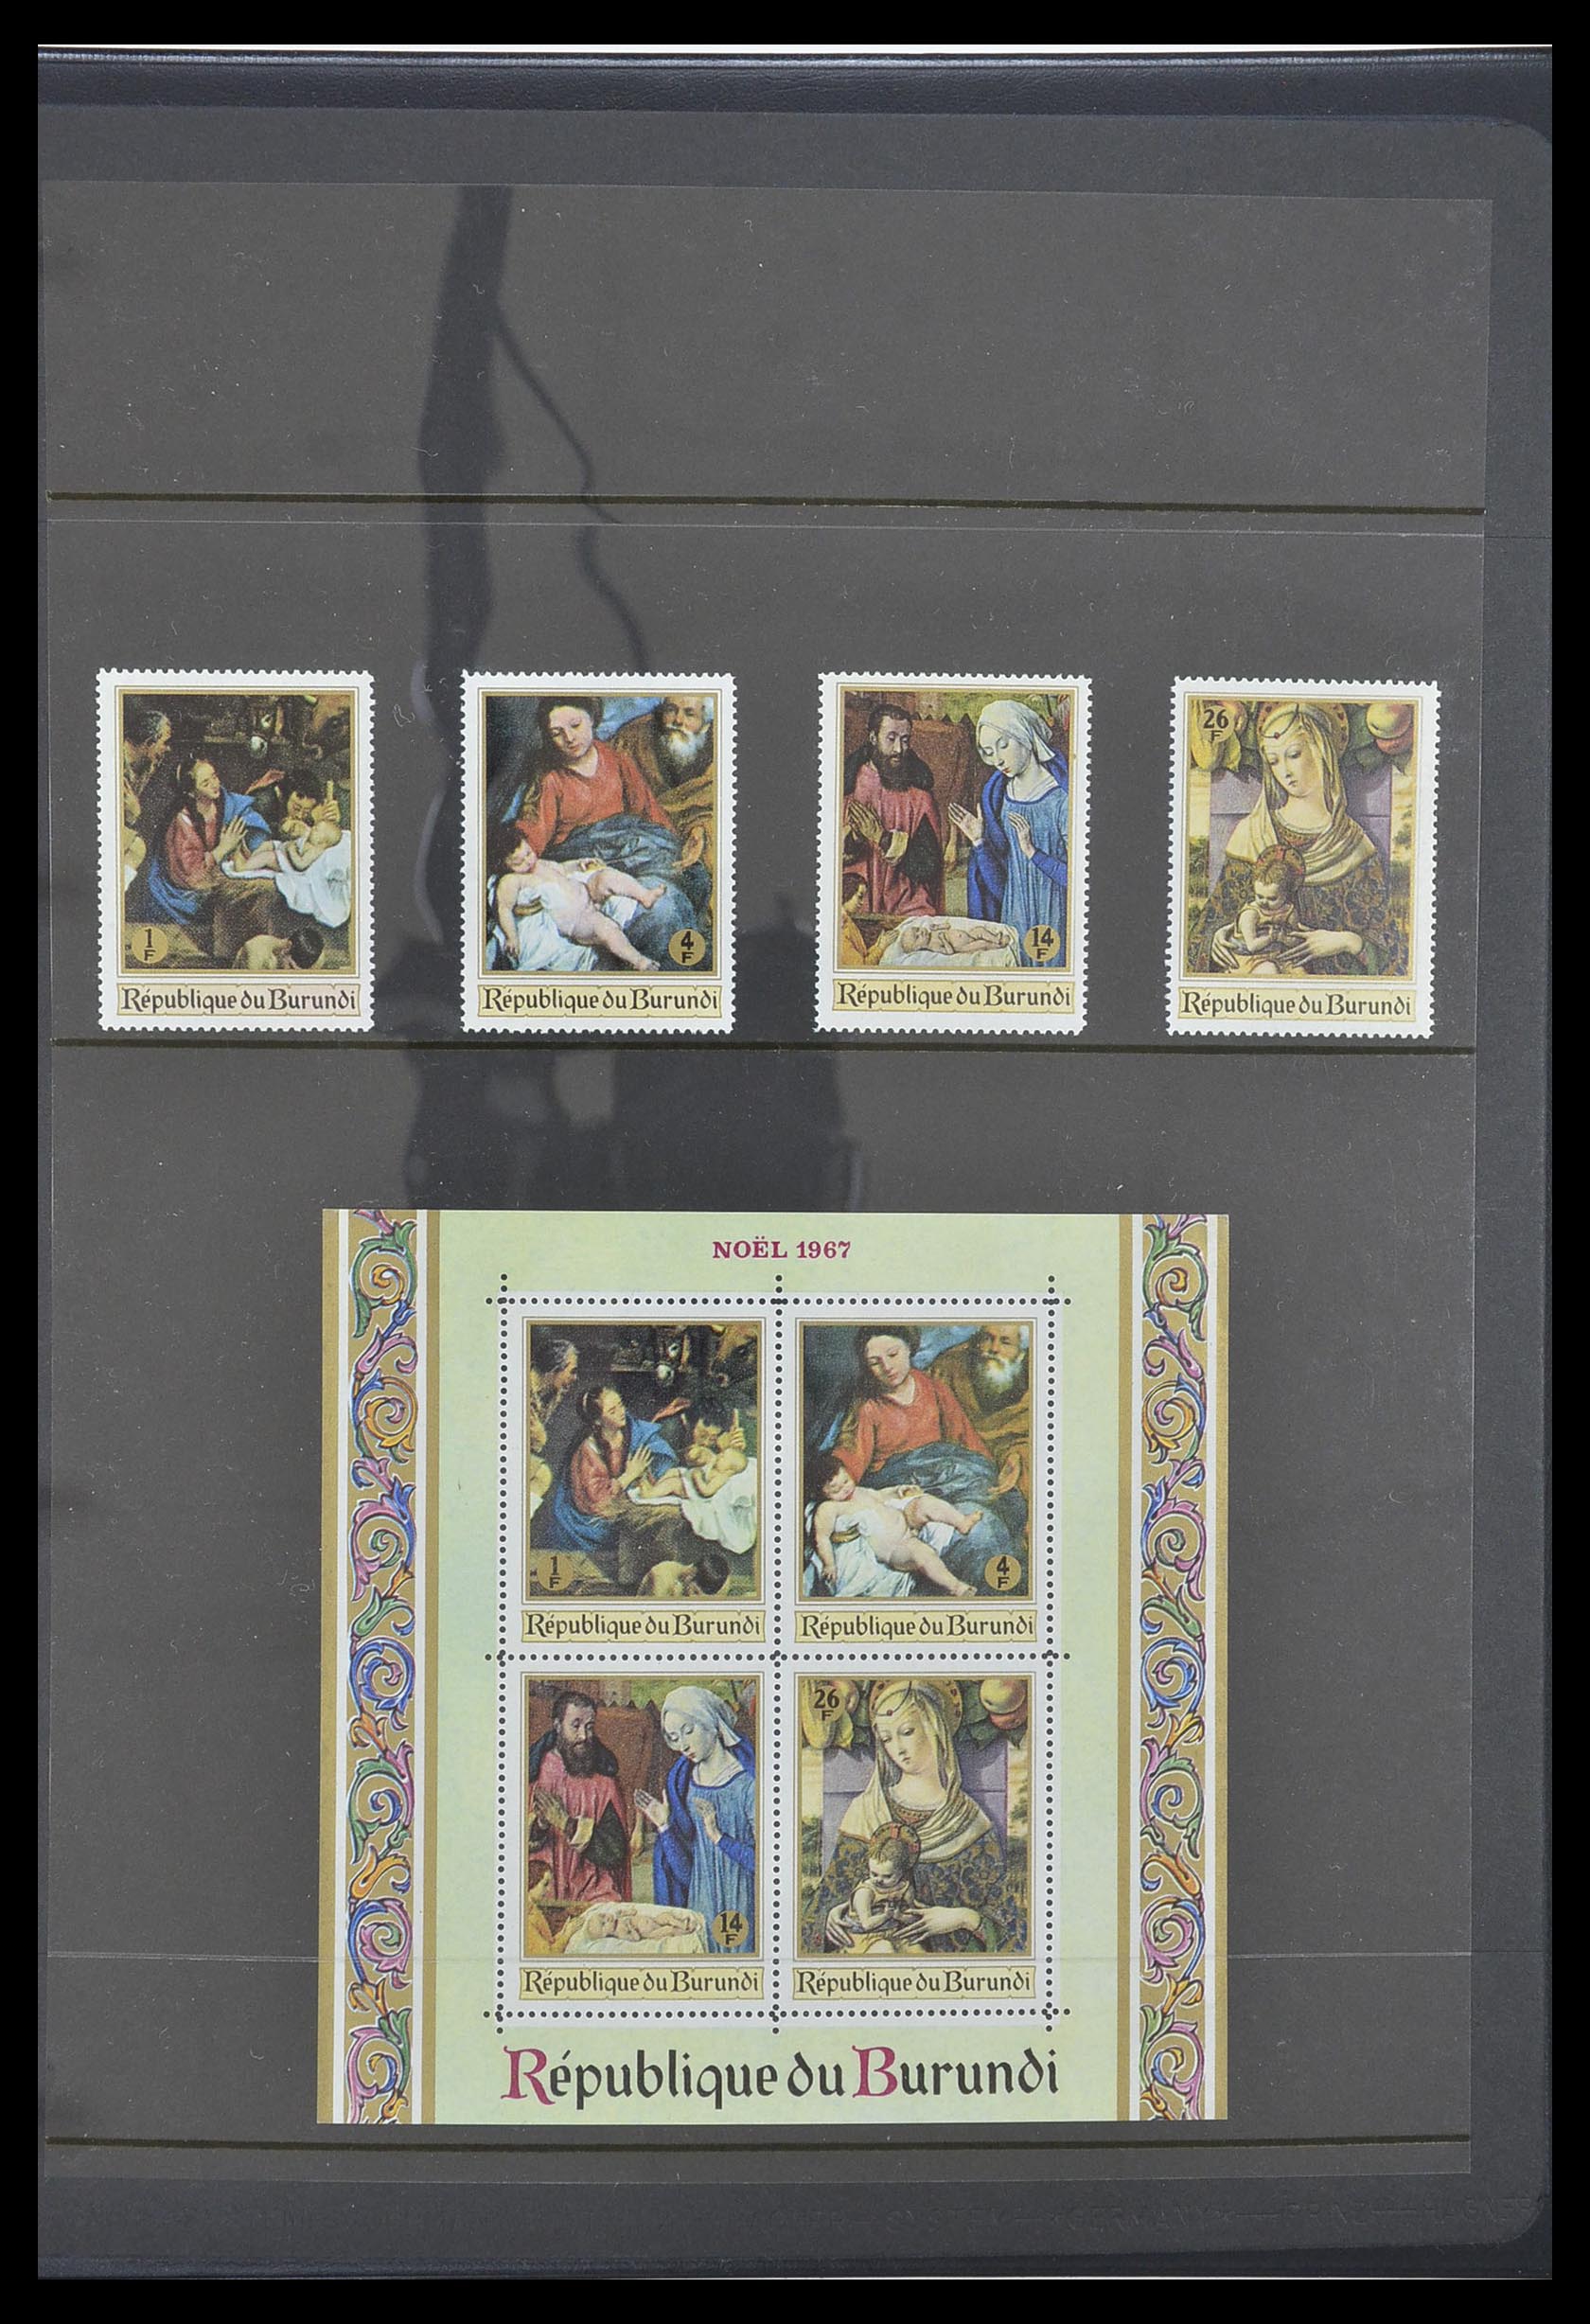 33764 089 - Stamp collection 33764 Burundi 1962-2004.